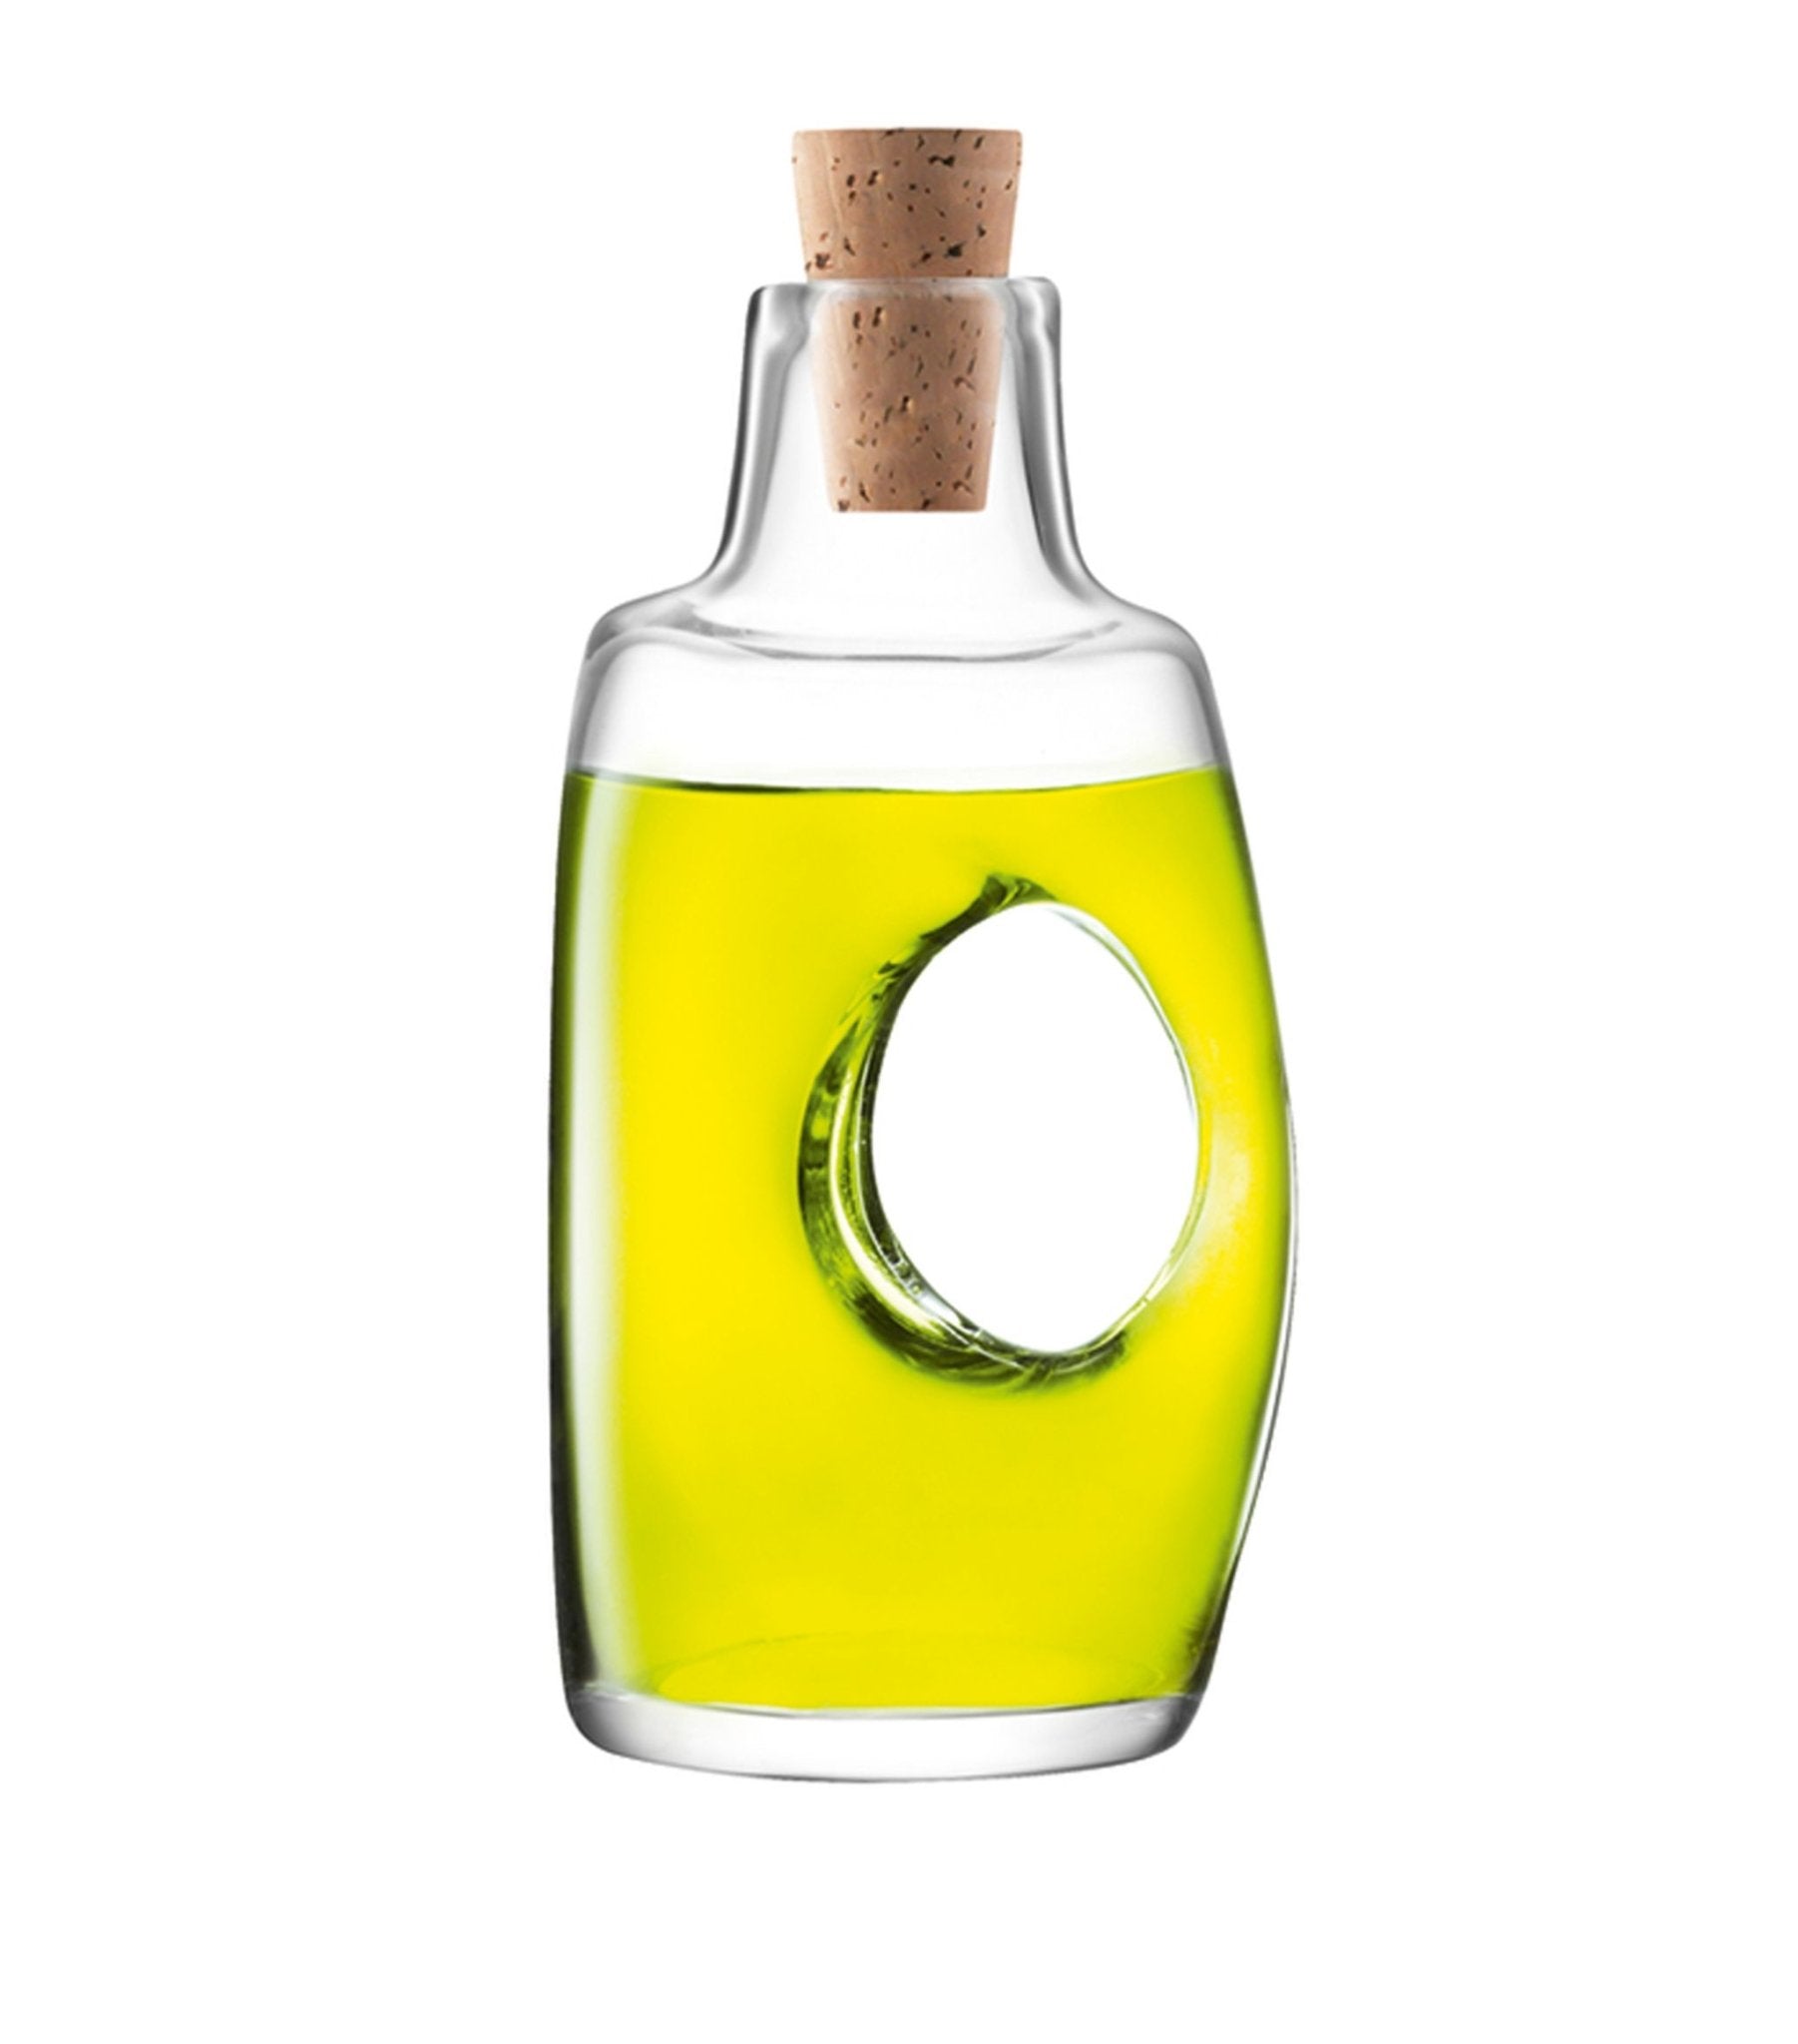 Void Oil or Vinegar Bottle & Cork Stopper 4oz